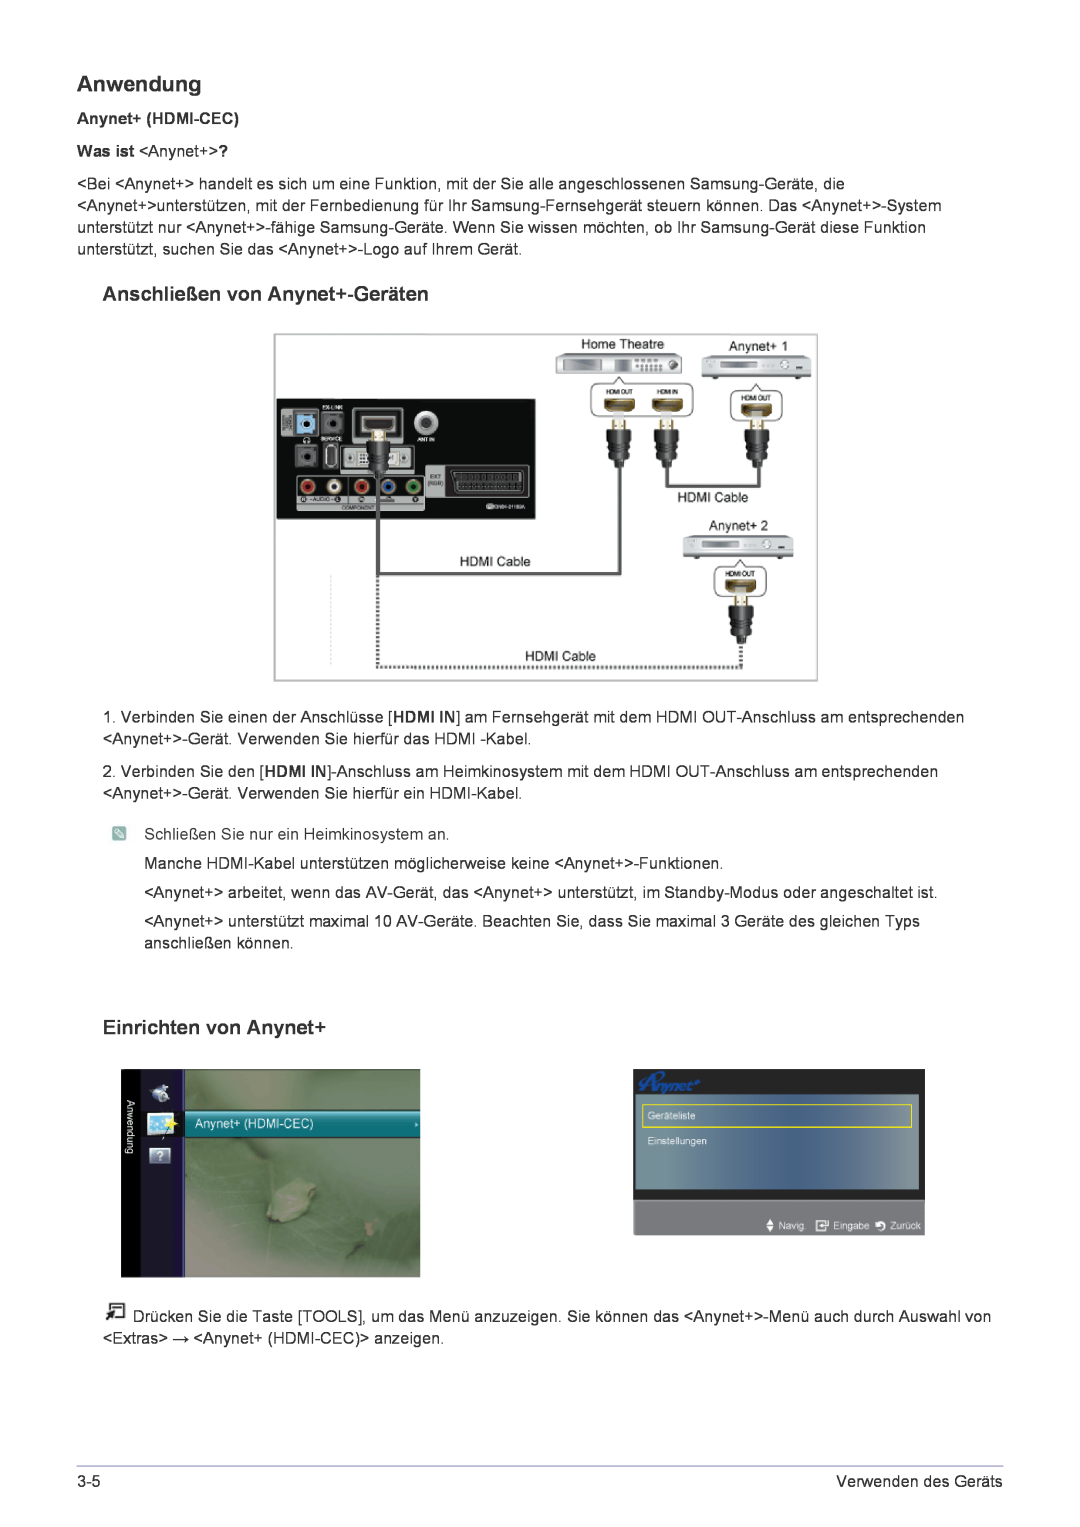 Samsung LS22FMDGF/EN manual Anwendung, Anschließen von Anynet+-Geräten, Einrichten von Anynet+ 